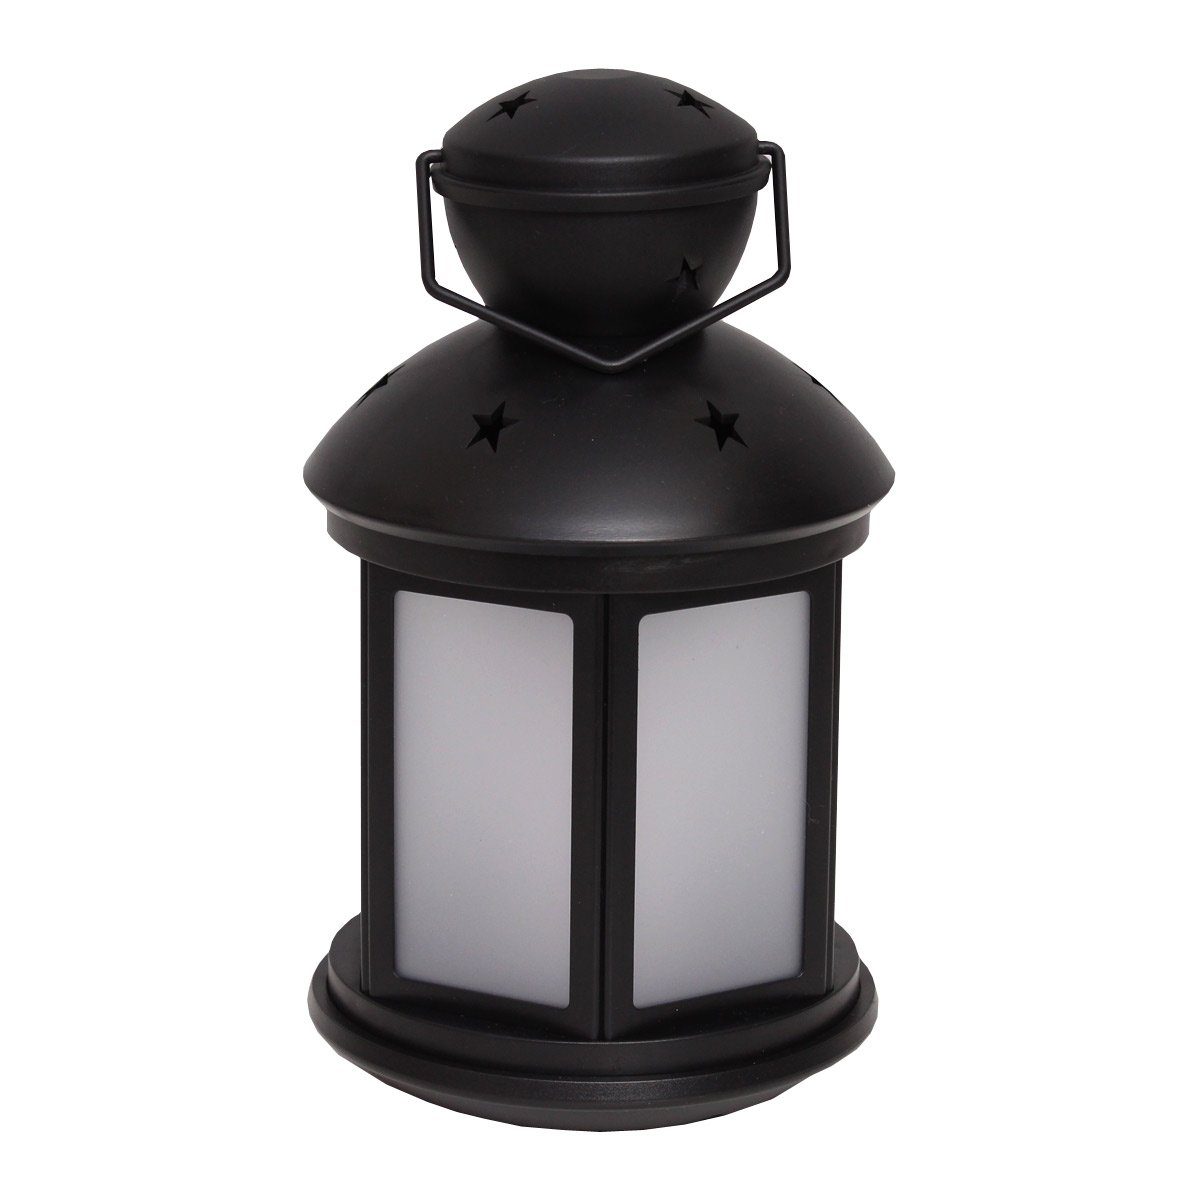 MARELIDA LED Laterne LED Laterne flackernd Classic, LED amber 22cm schwarz, mit Dekolaterne Flammeneffekt